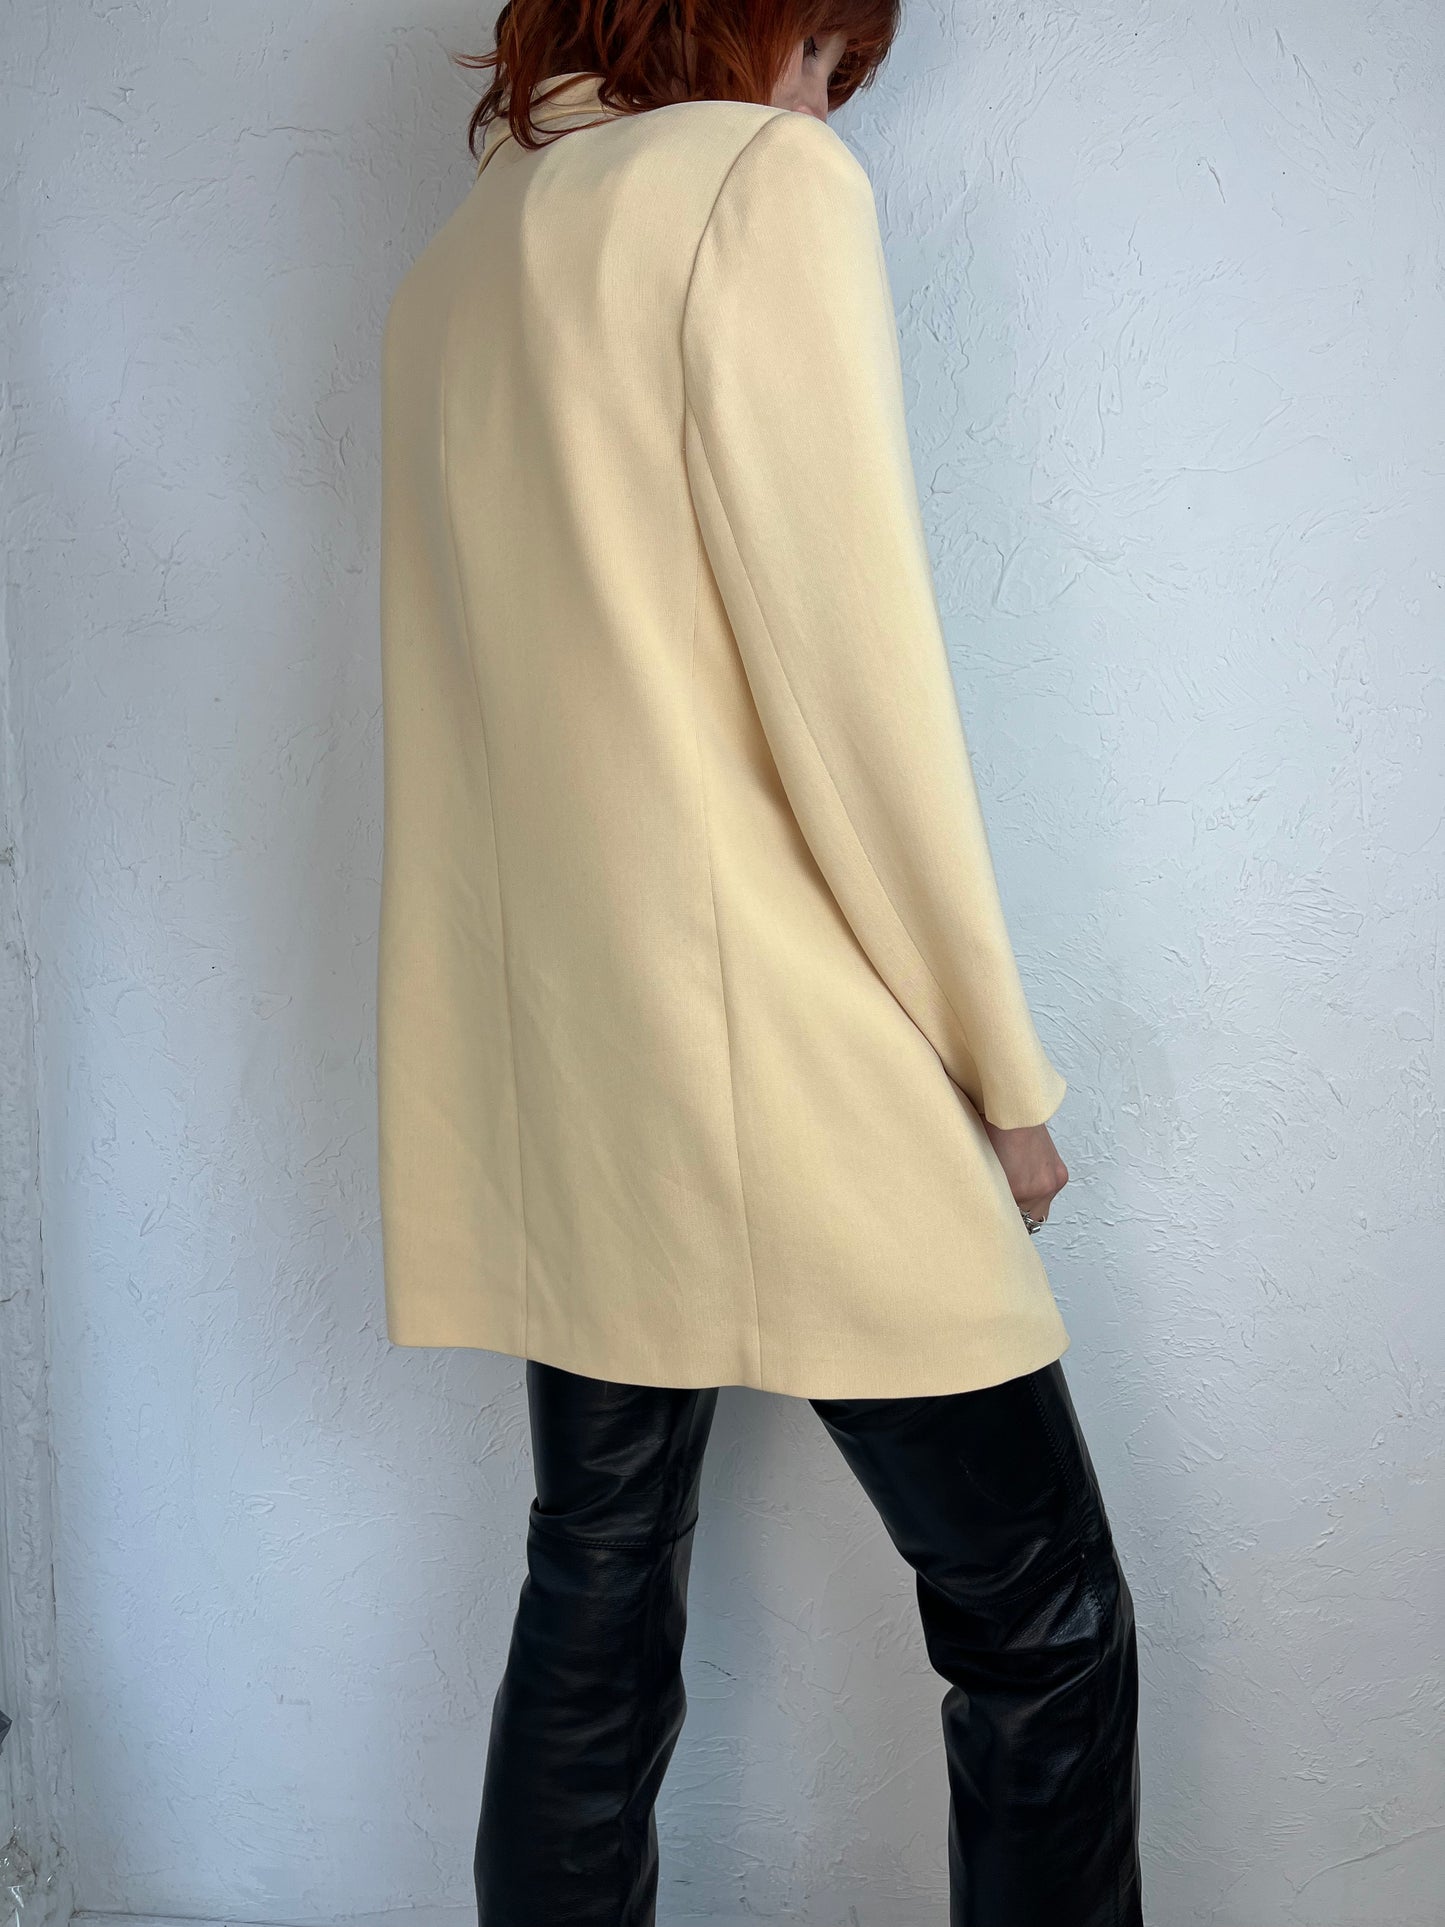 90s 'Emanuel' Pale Yellow Oversized Blazer jacket / Large